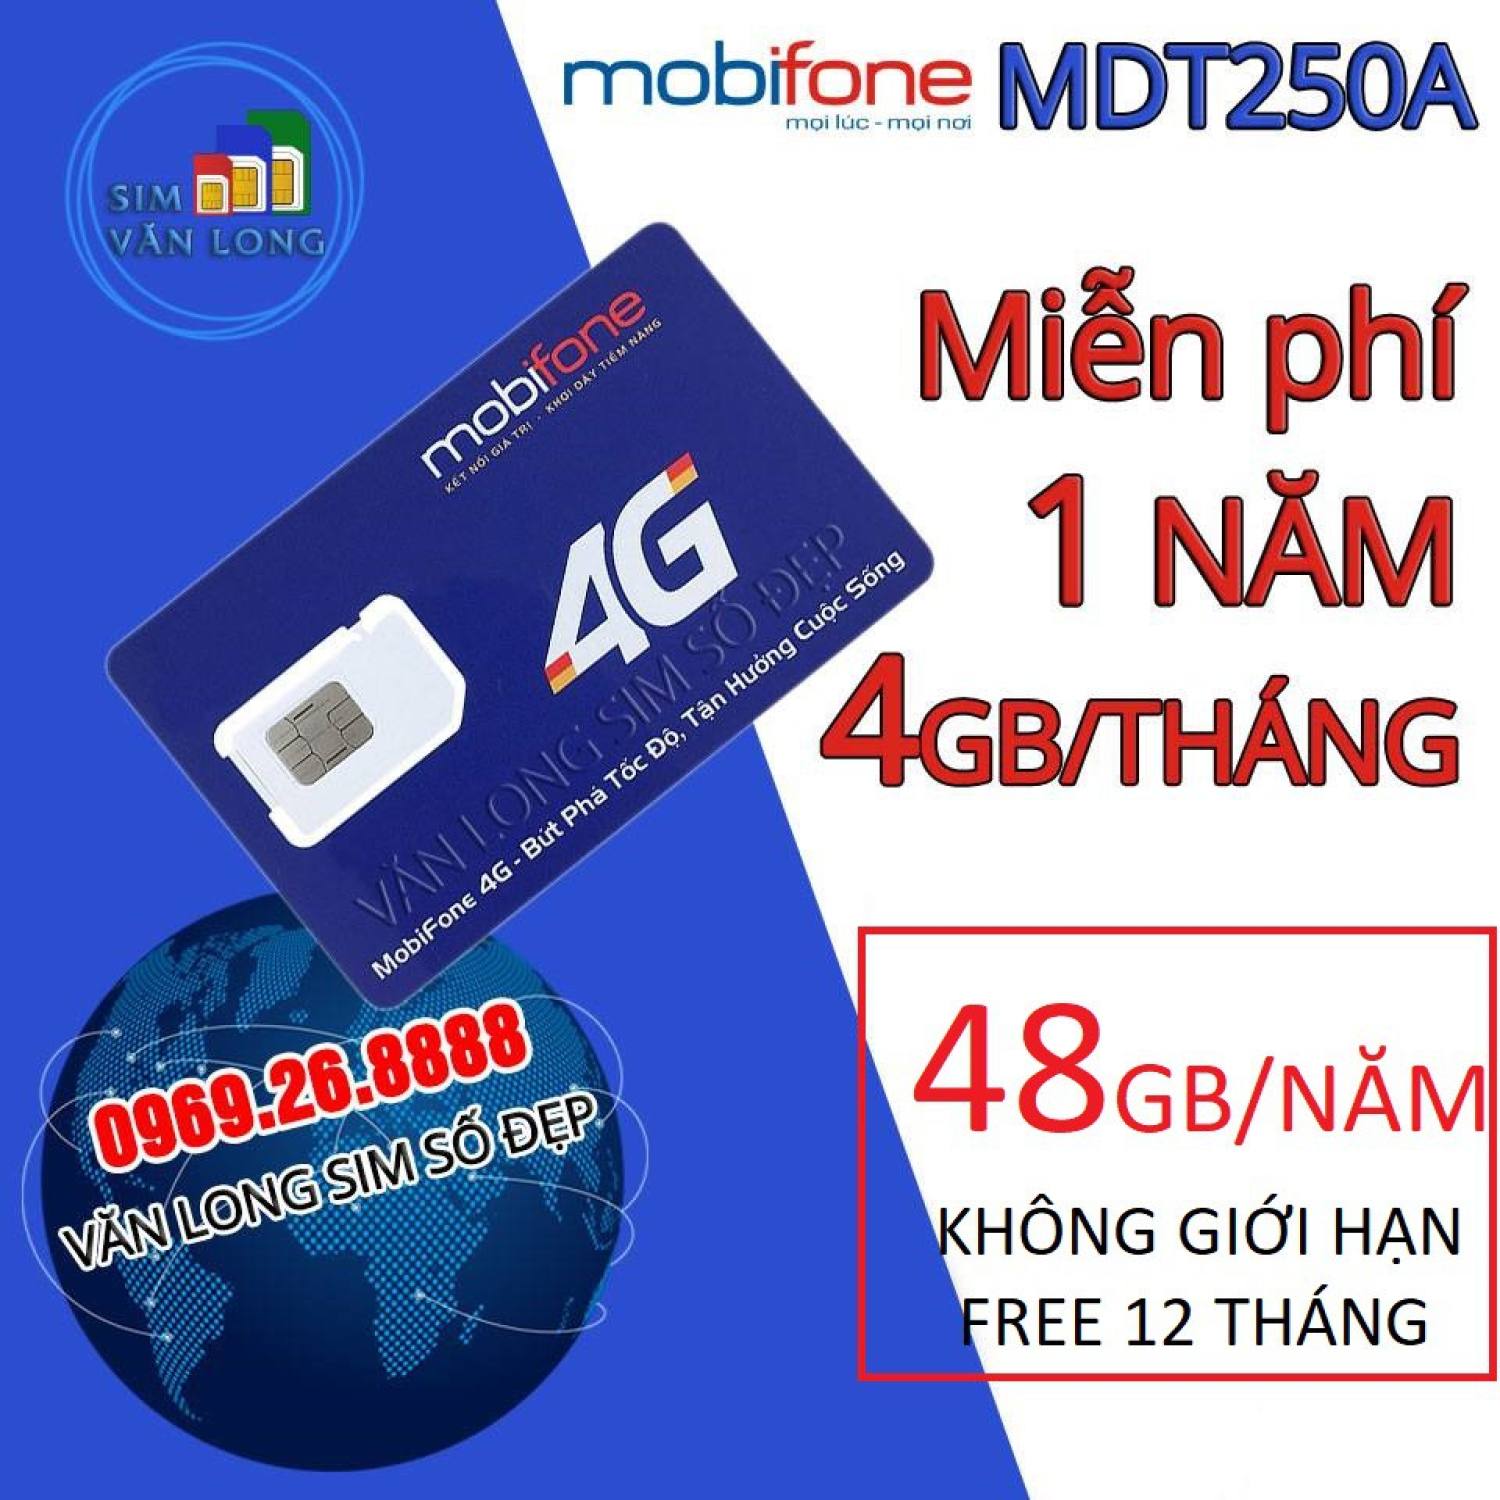 [ FREESHIP] Sim 4G Mobifone MDT250A trọn gói 1 năm không cần nạp tiềƞ, cam kết bảo hành 12 tháng - Sim 4G Mobi